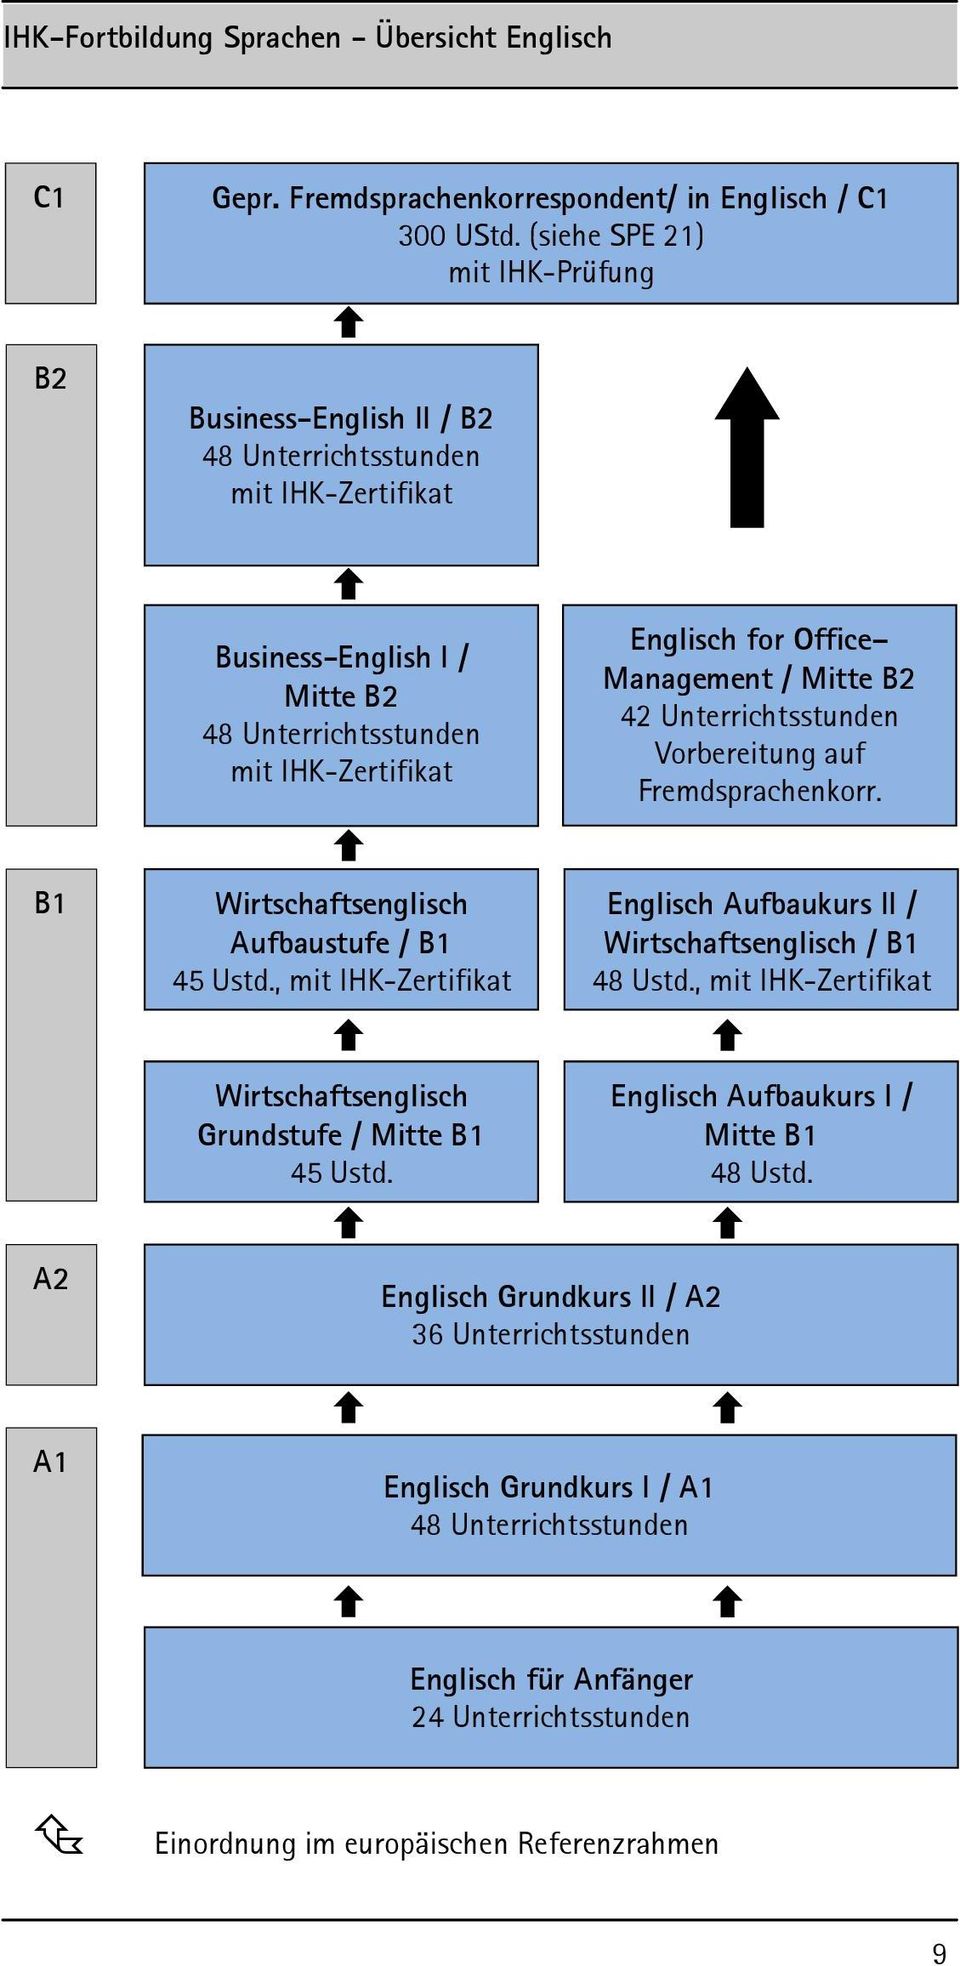 Management / Mitte B2 42 Unterrichtsstunden Vorbereitung auf Fremdsprachenkorr. B1 Wirtschaftsenglisch Aufbaustufe / B1 45 Ustd.